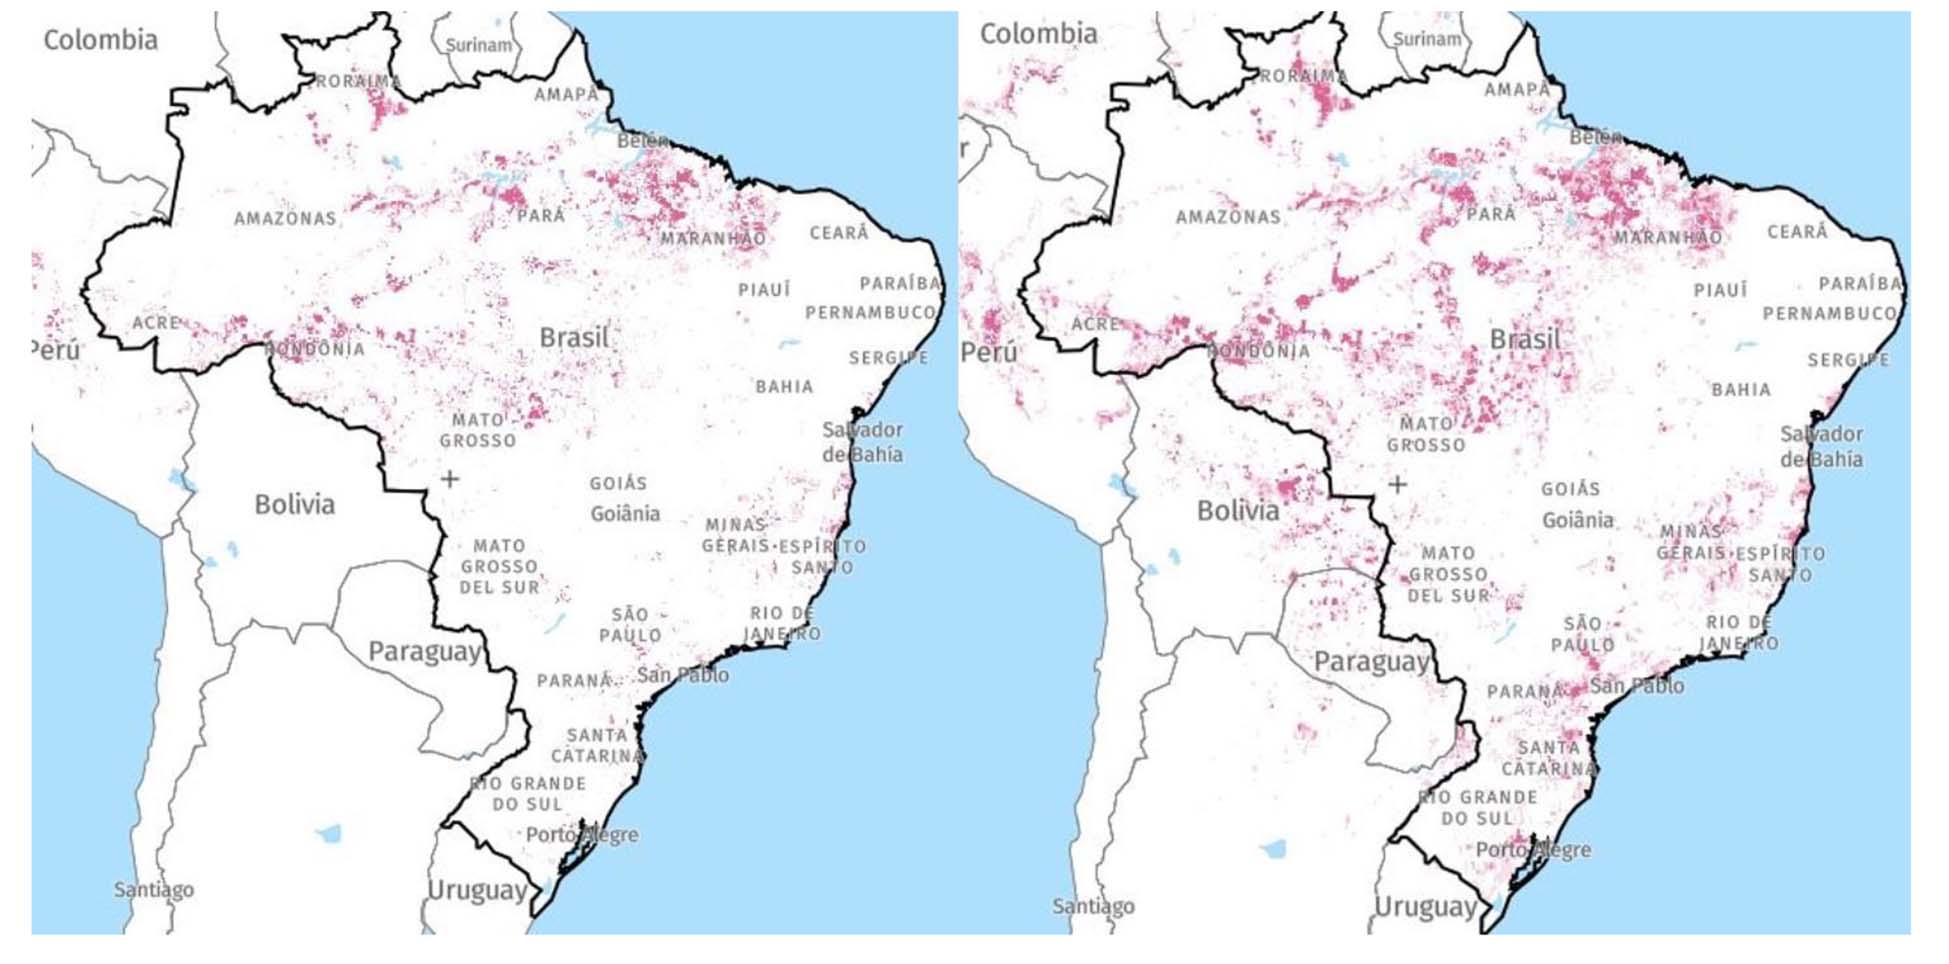 Alertas de deforestación en Brasil a diciembre 2017 (izquierda) y a diciembre 2019 (derecha)